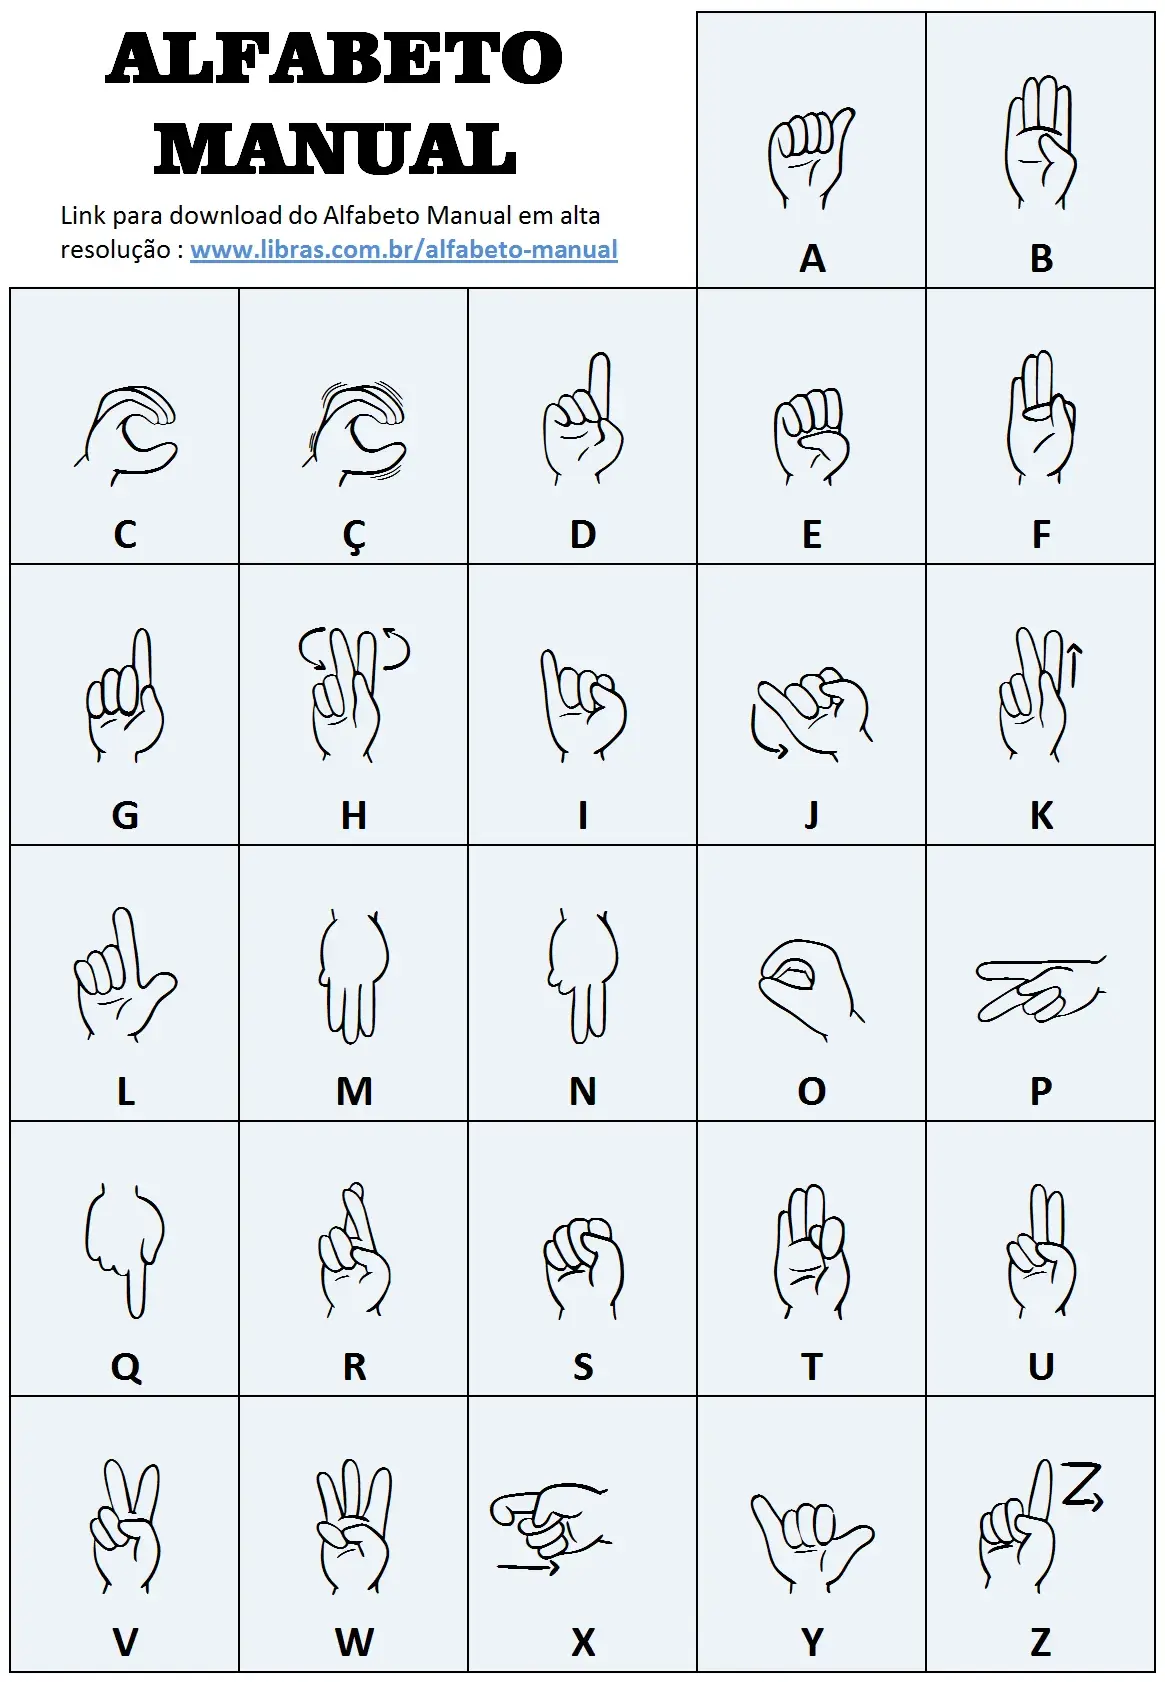 Alfabeto manual da Libras desenvolvido pelo Libras.com.br.